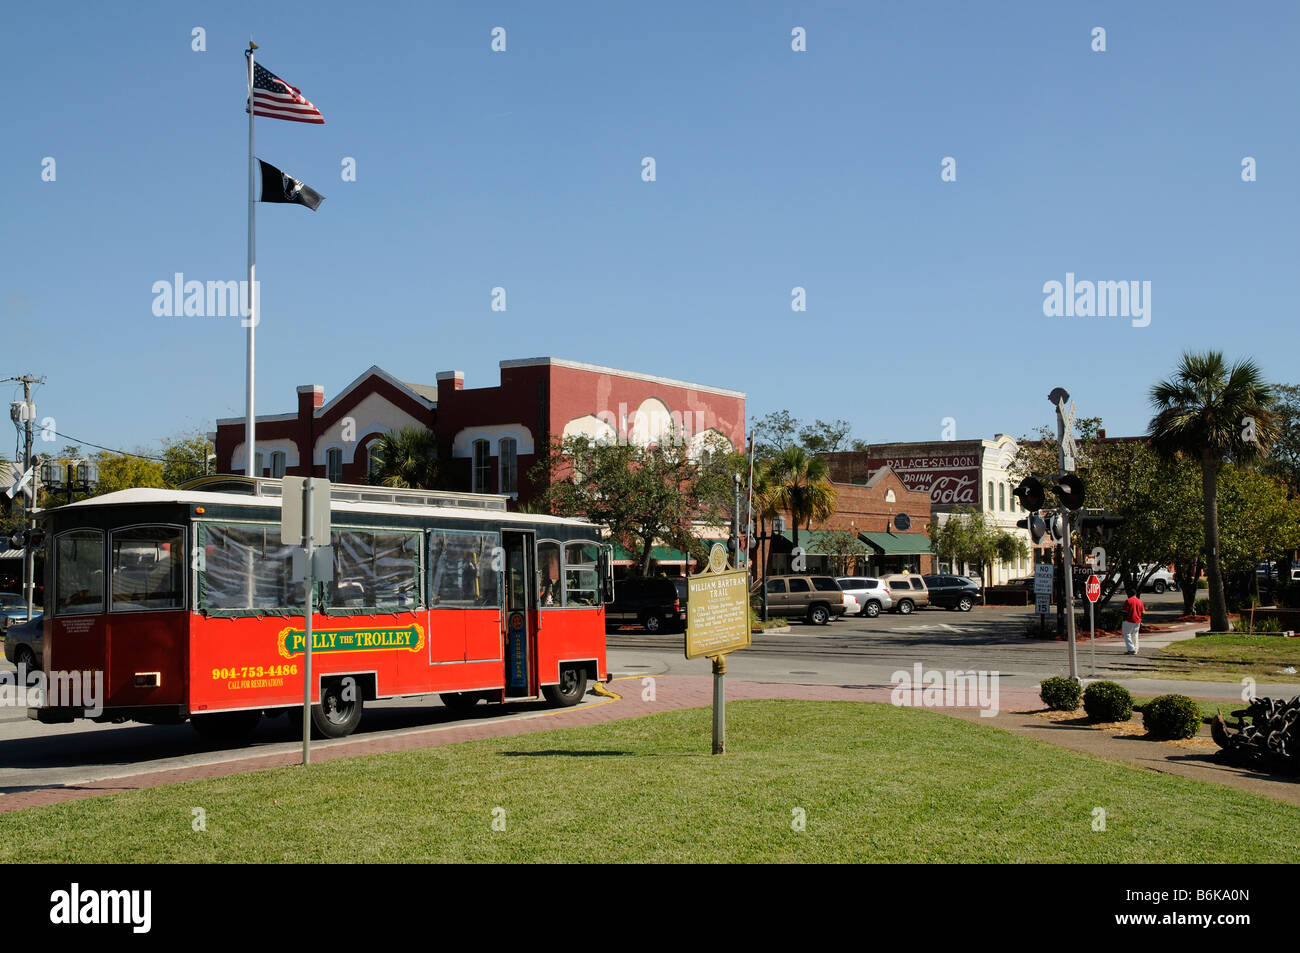 Les propriétés du centre-ville de Amelia Island Fernandina Beach Floride USA et trolley touristique Banque D'Images